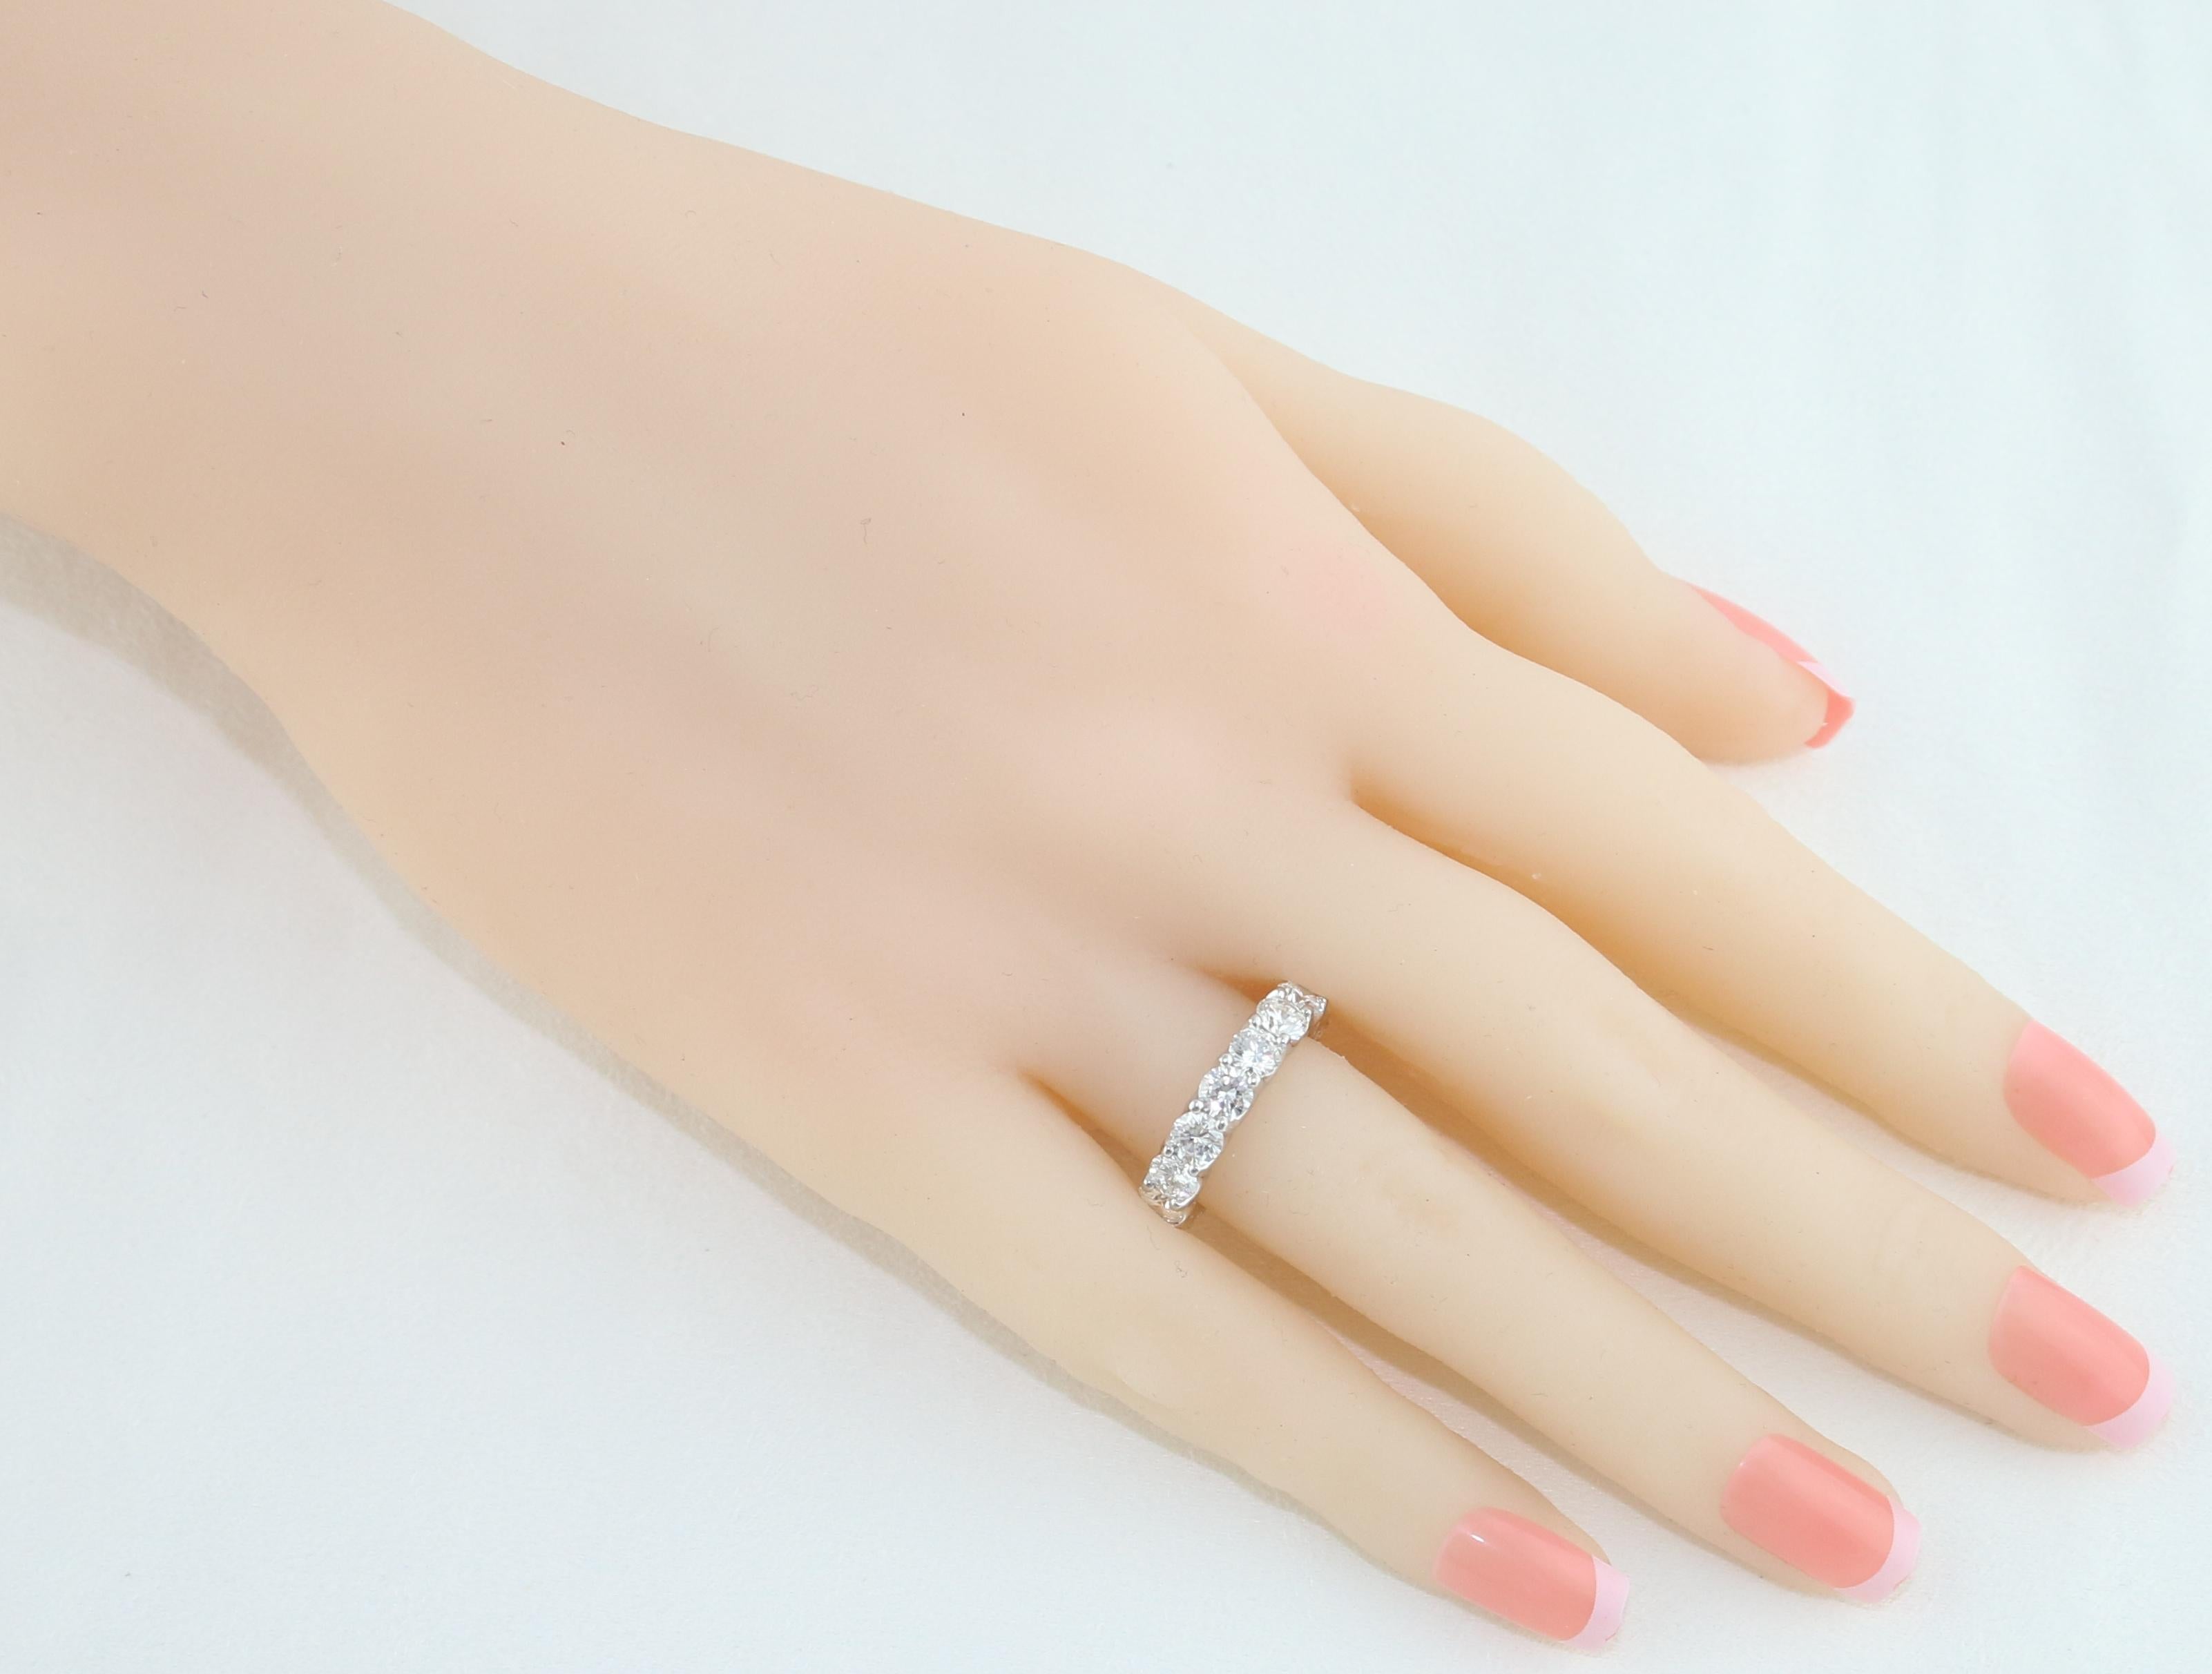 Platin Diamant Eternity Band.
Es sind 4,25 Karat Diamanten F/G VS
Der Ring hat 16 Steine.
Der Ring ist eine Größe 5,25, nicht sizable.
Der Ring wiegt 7.1 Gramm.